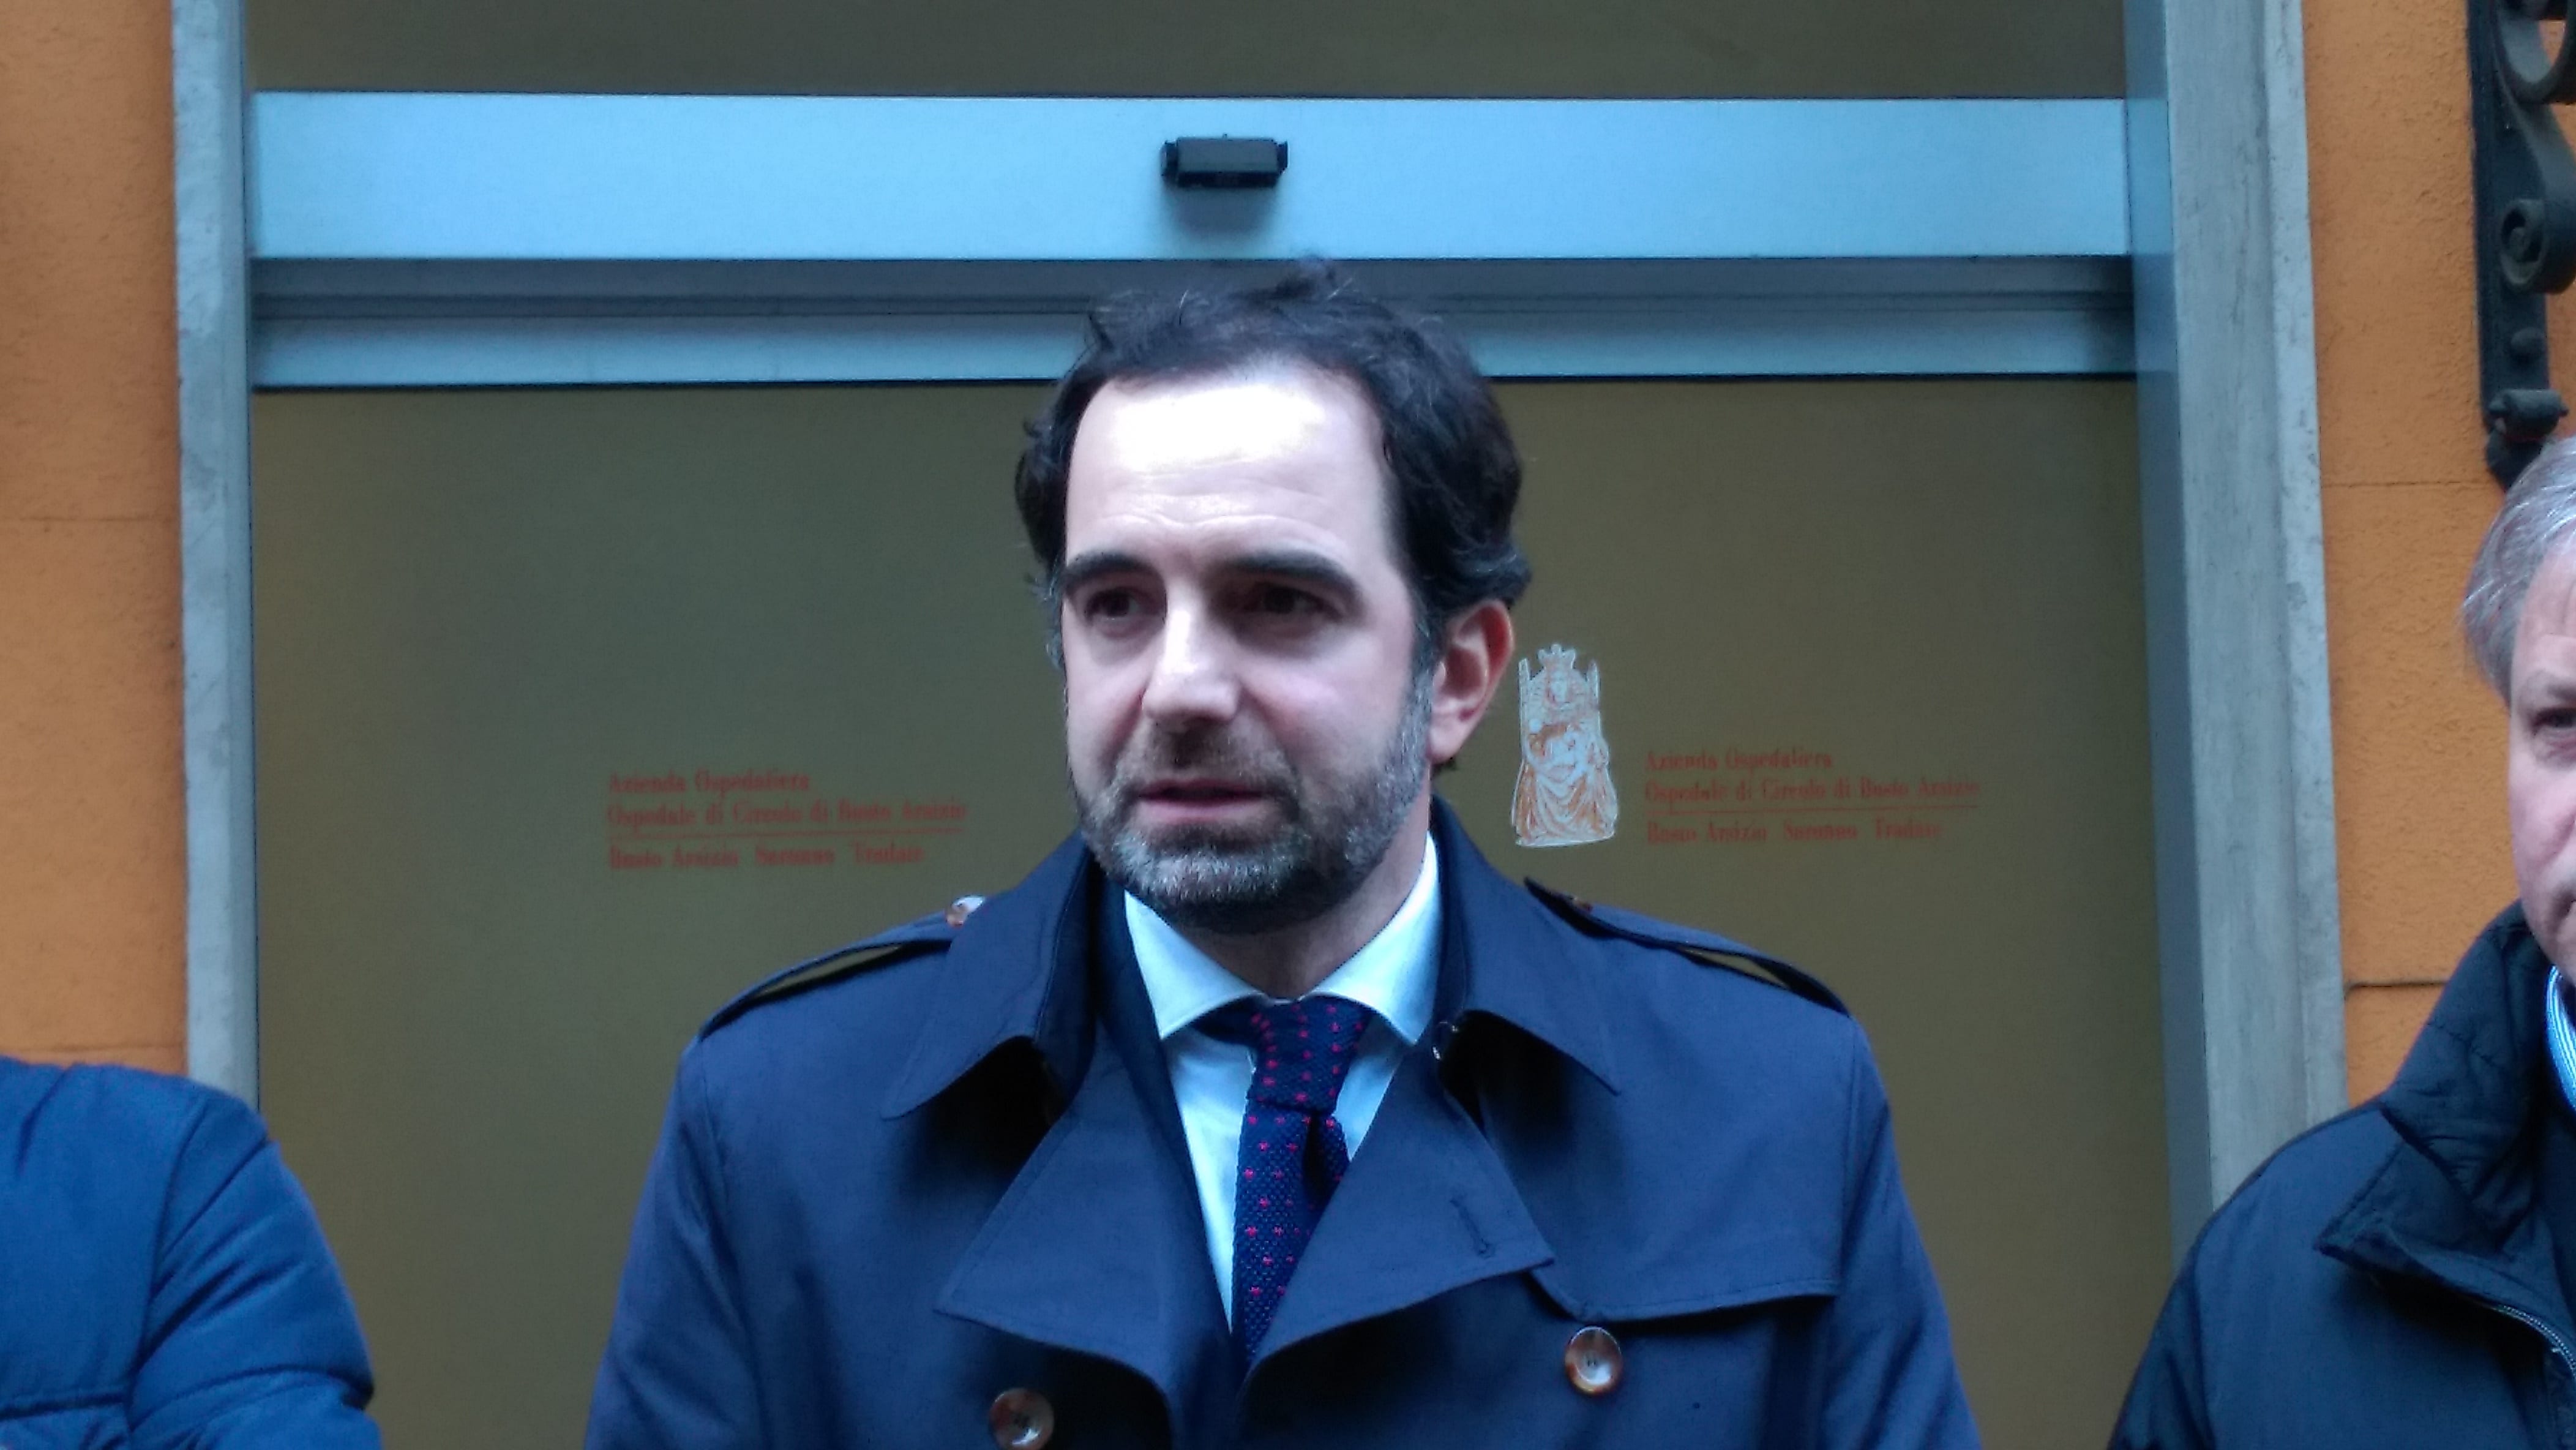 Accordo fiscale Italia Svizzera, Alfieri (Pd): “Lavoriamo per rispondere alle richieste dei territori di confine”